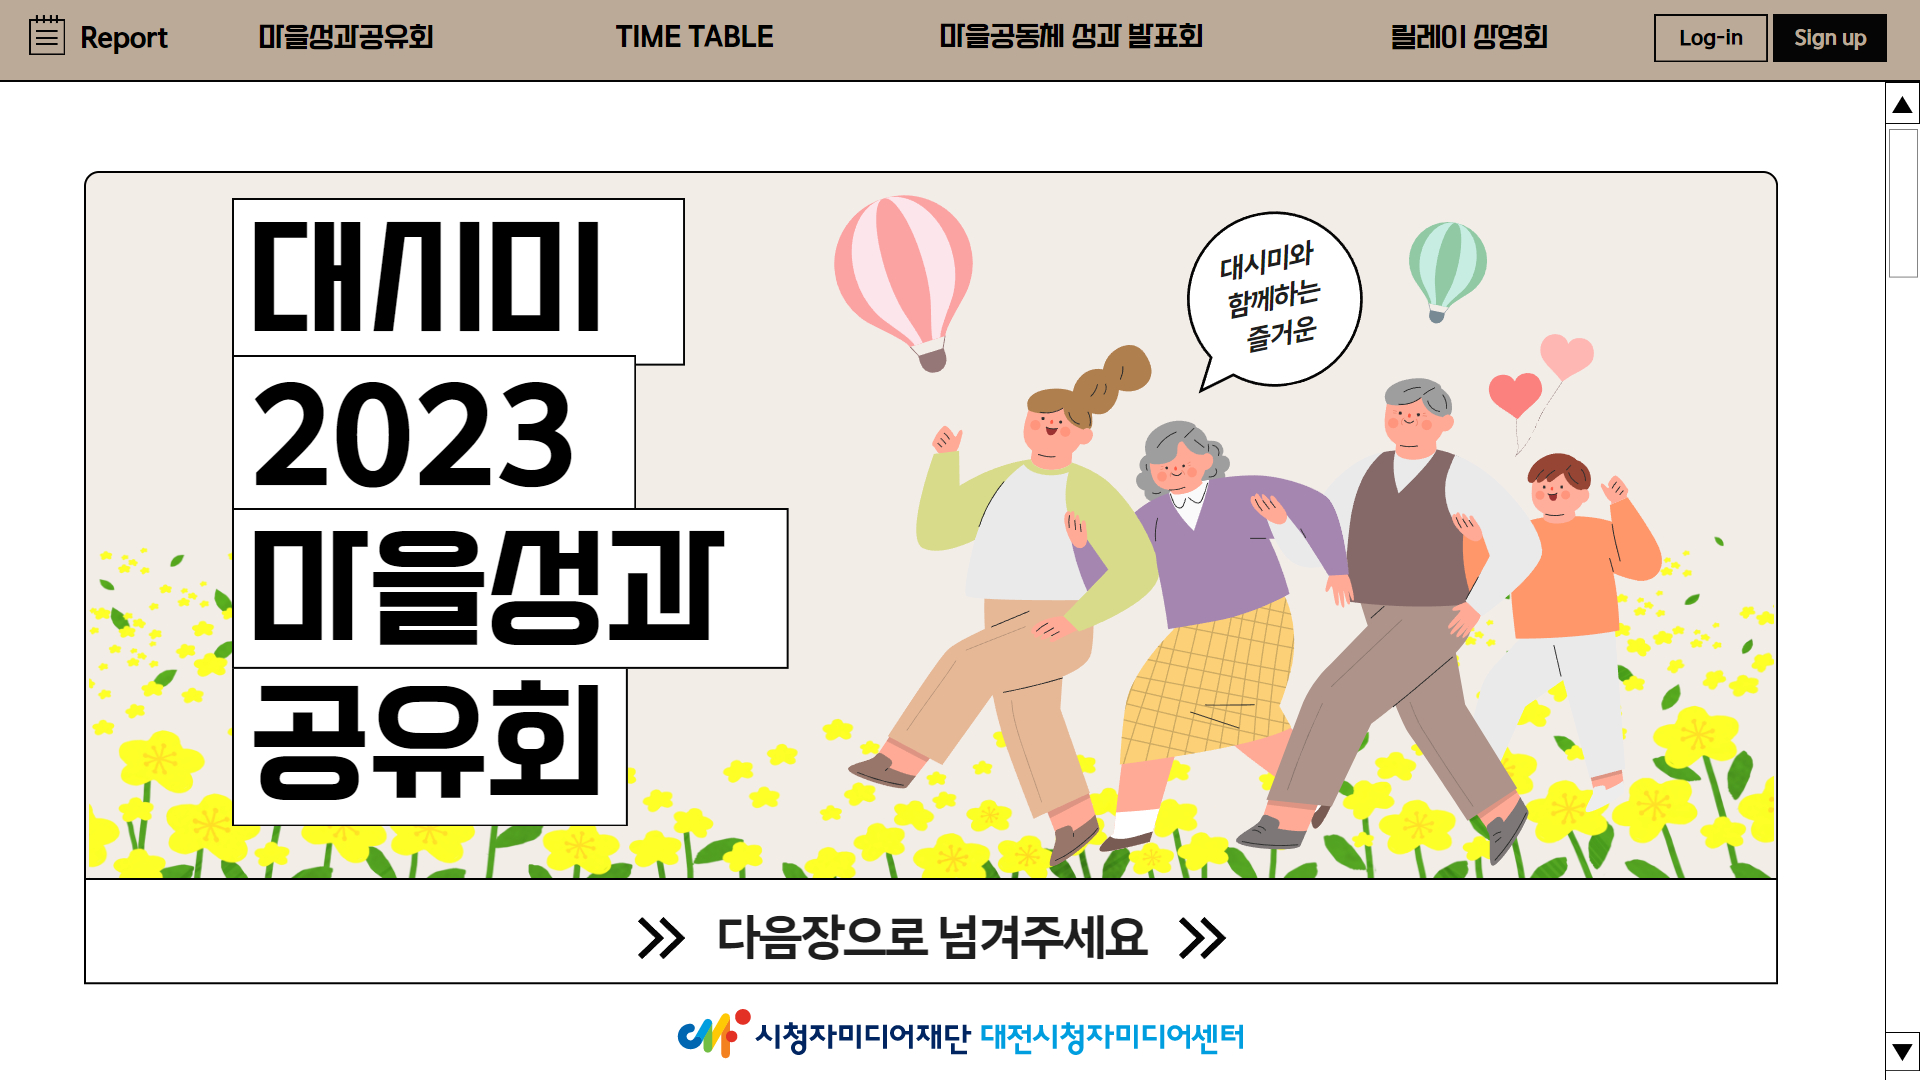 2023 마을성과공유회 (Feat. 즐거운 상영회와 함께하는 네트워킹 성과공유회!)